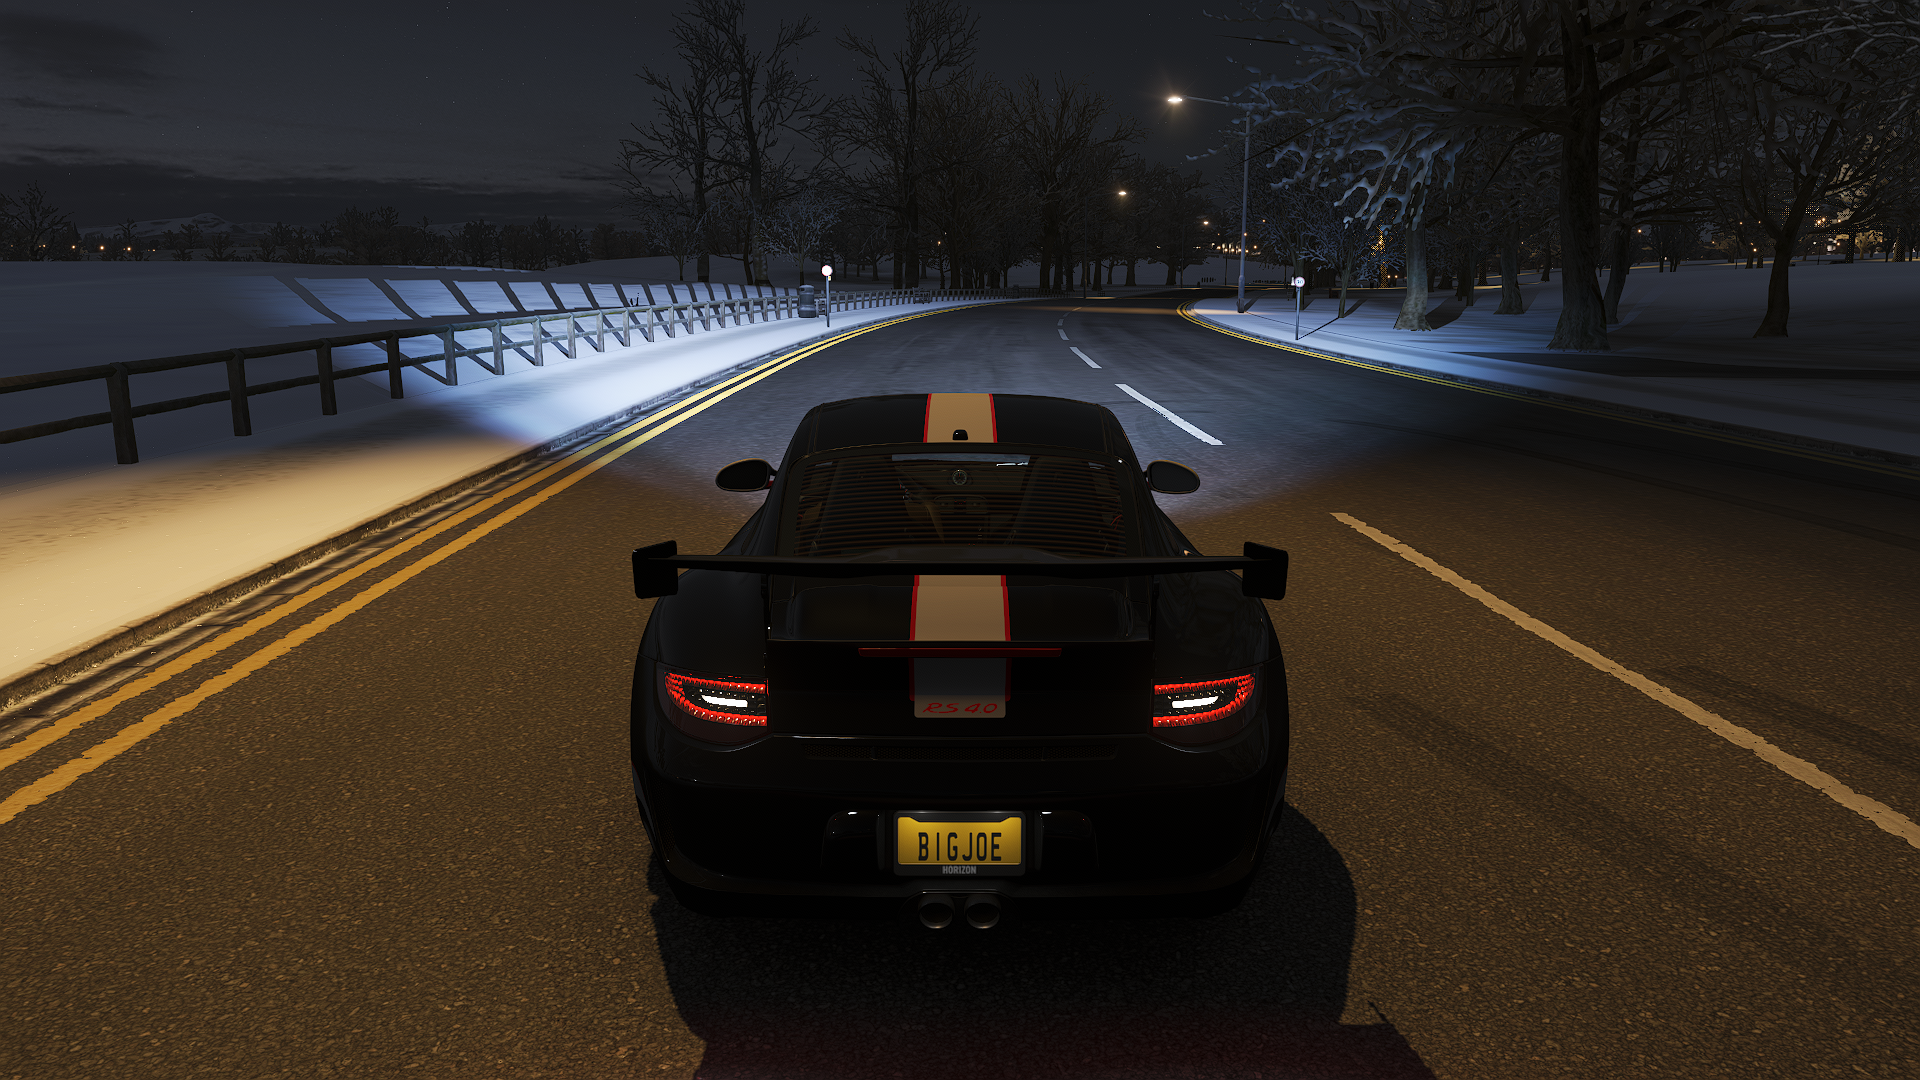 Forza Forza Horizon Forza Horizon 4 Car Racing Porsche CGi Video Games Road Rear View Licence Plates 1920x1080